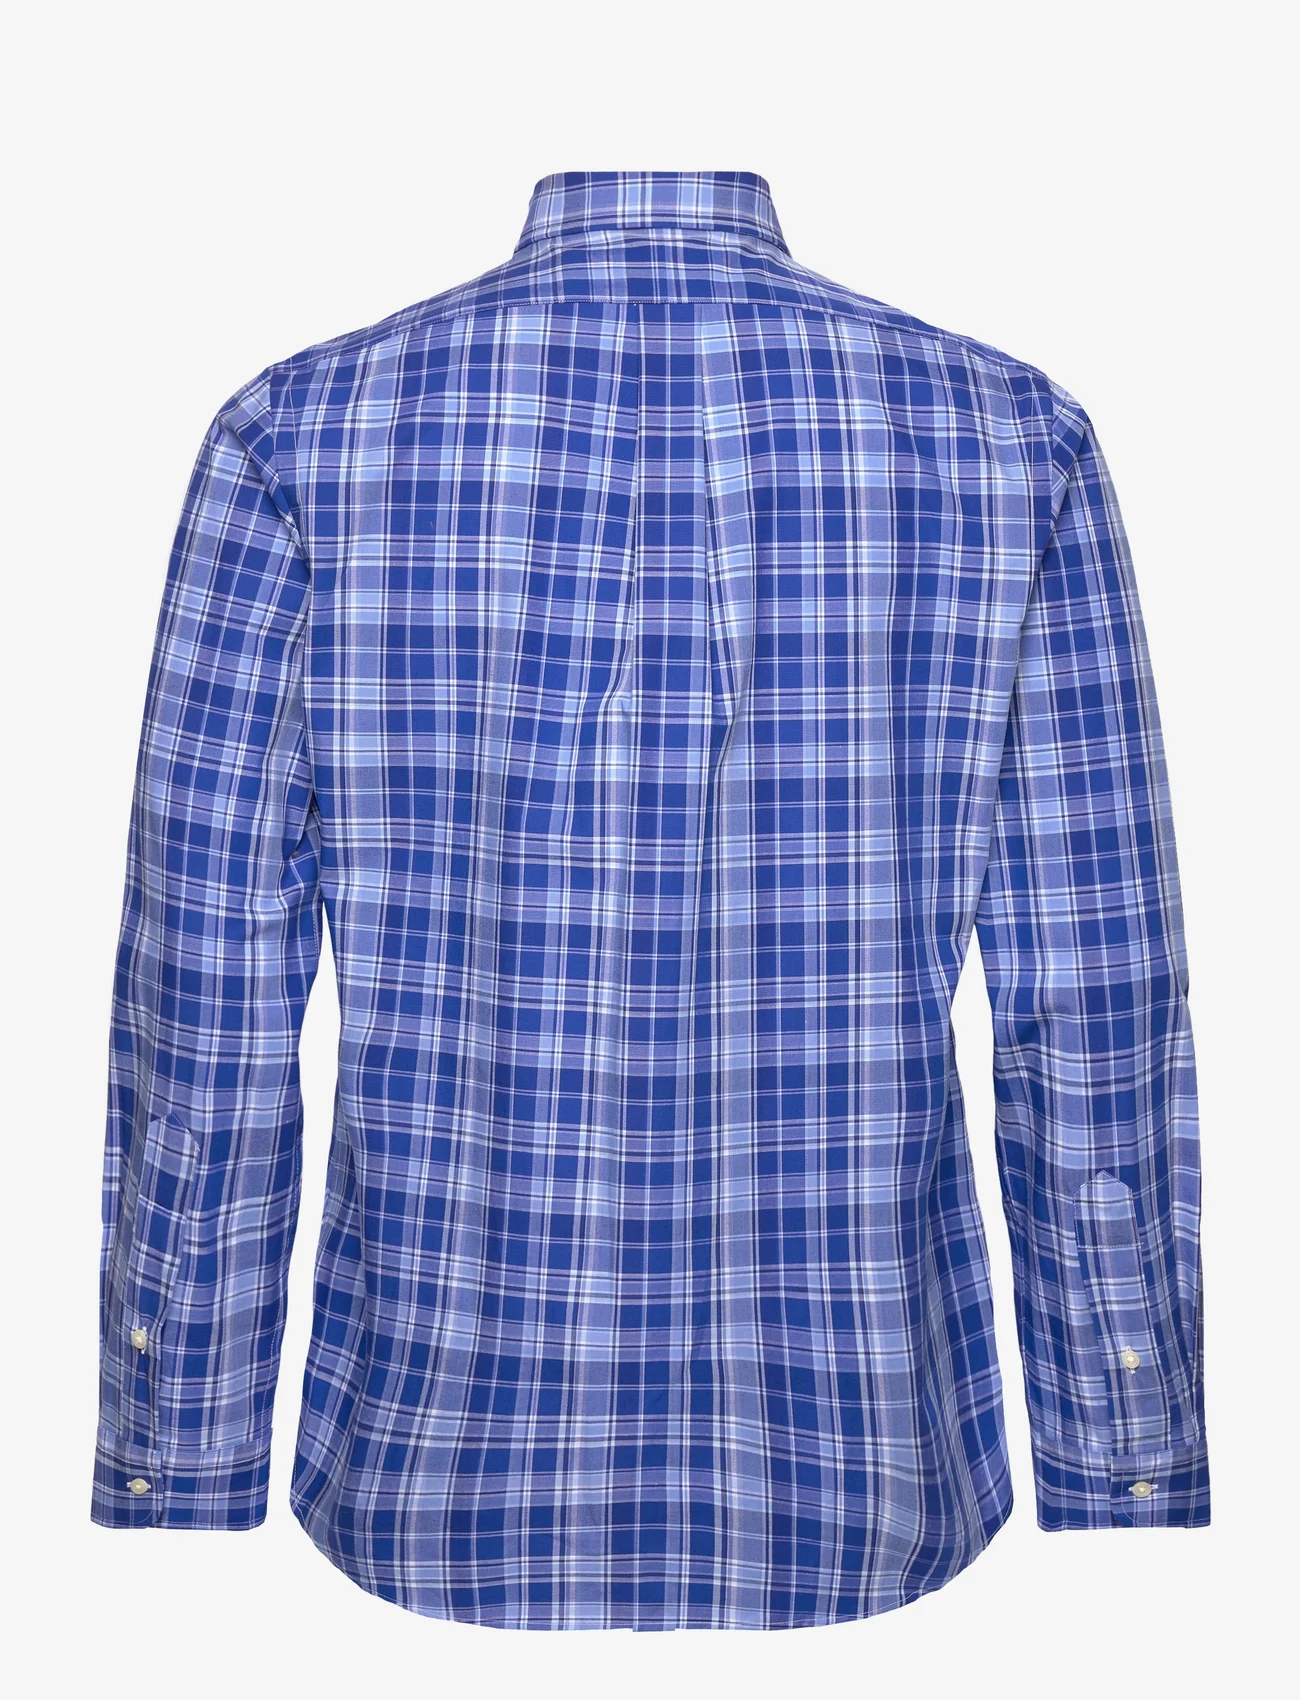 Polo Ralph Lauren - Custom Fit Gingham Stretch Poplin Shirt - karierte hemden - 6275 blue multi - 1